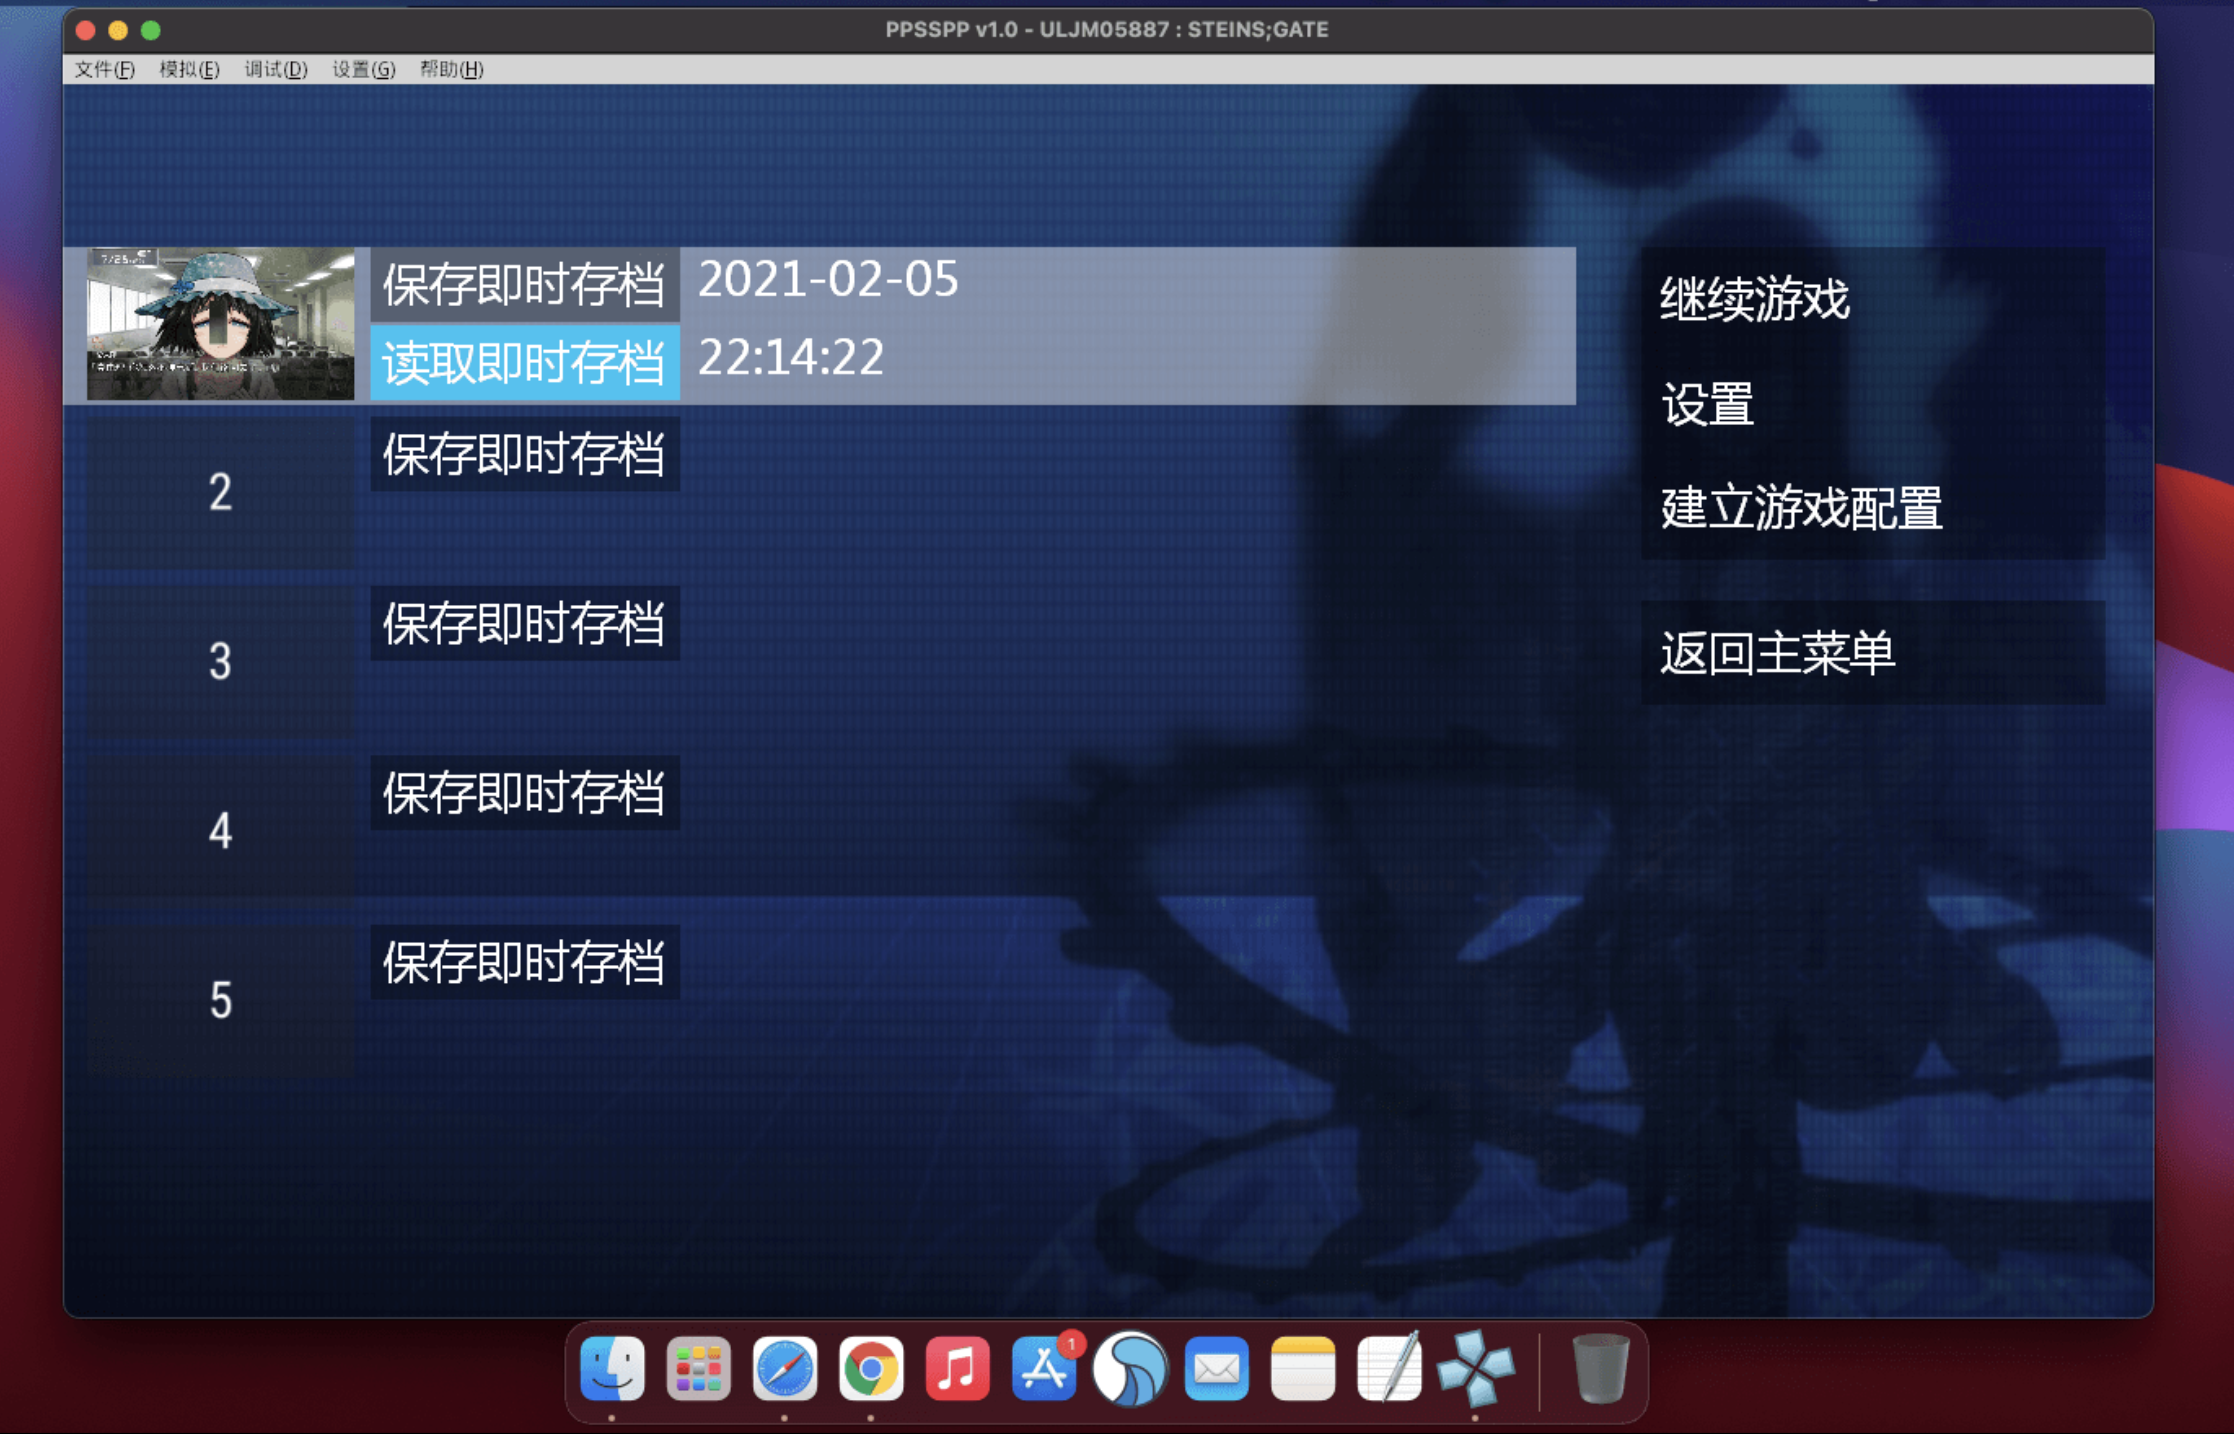 命运石之门 for Mac STEINS;GATE 中文移植版 苹果电脑